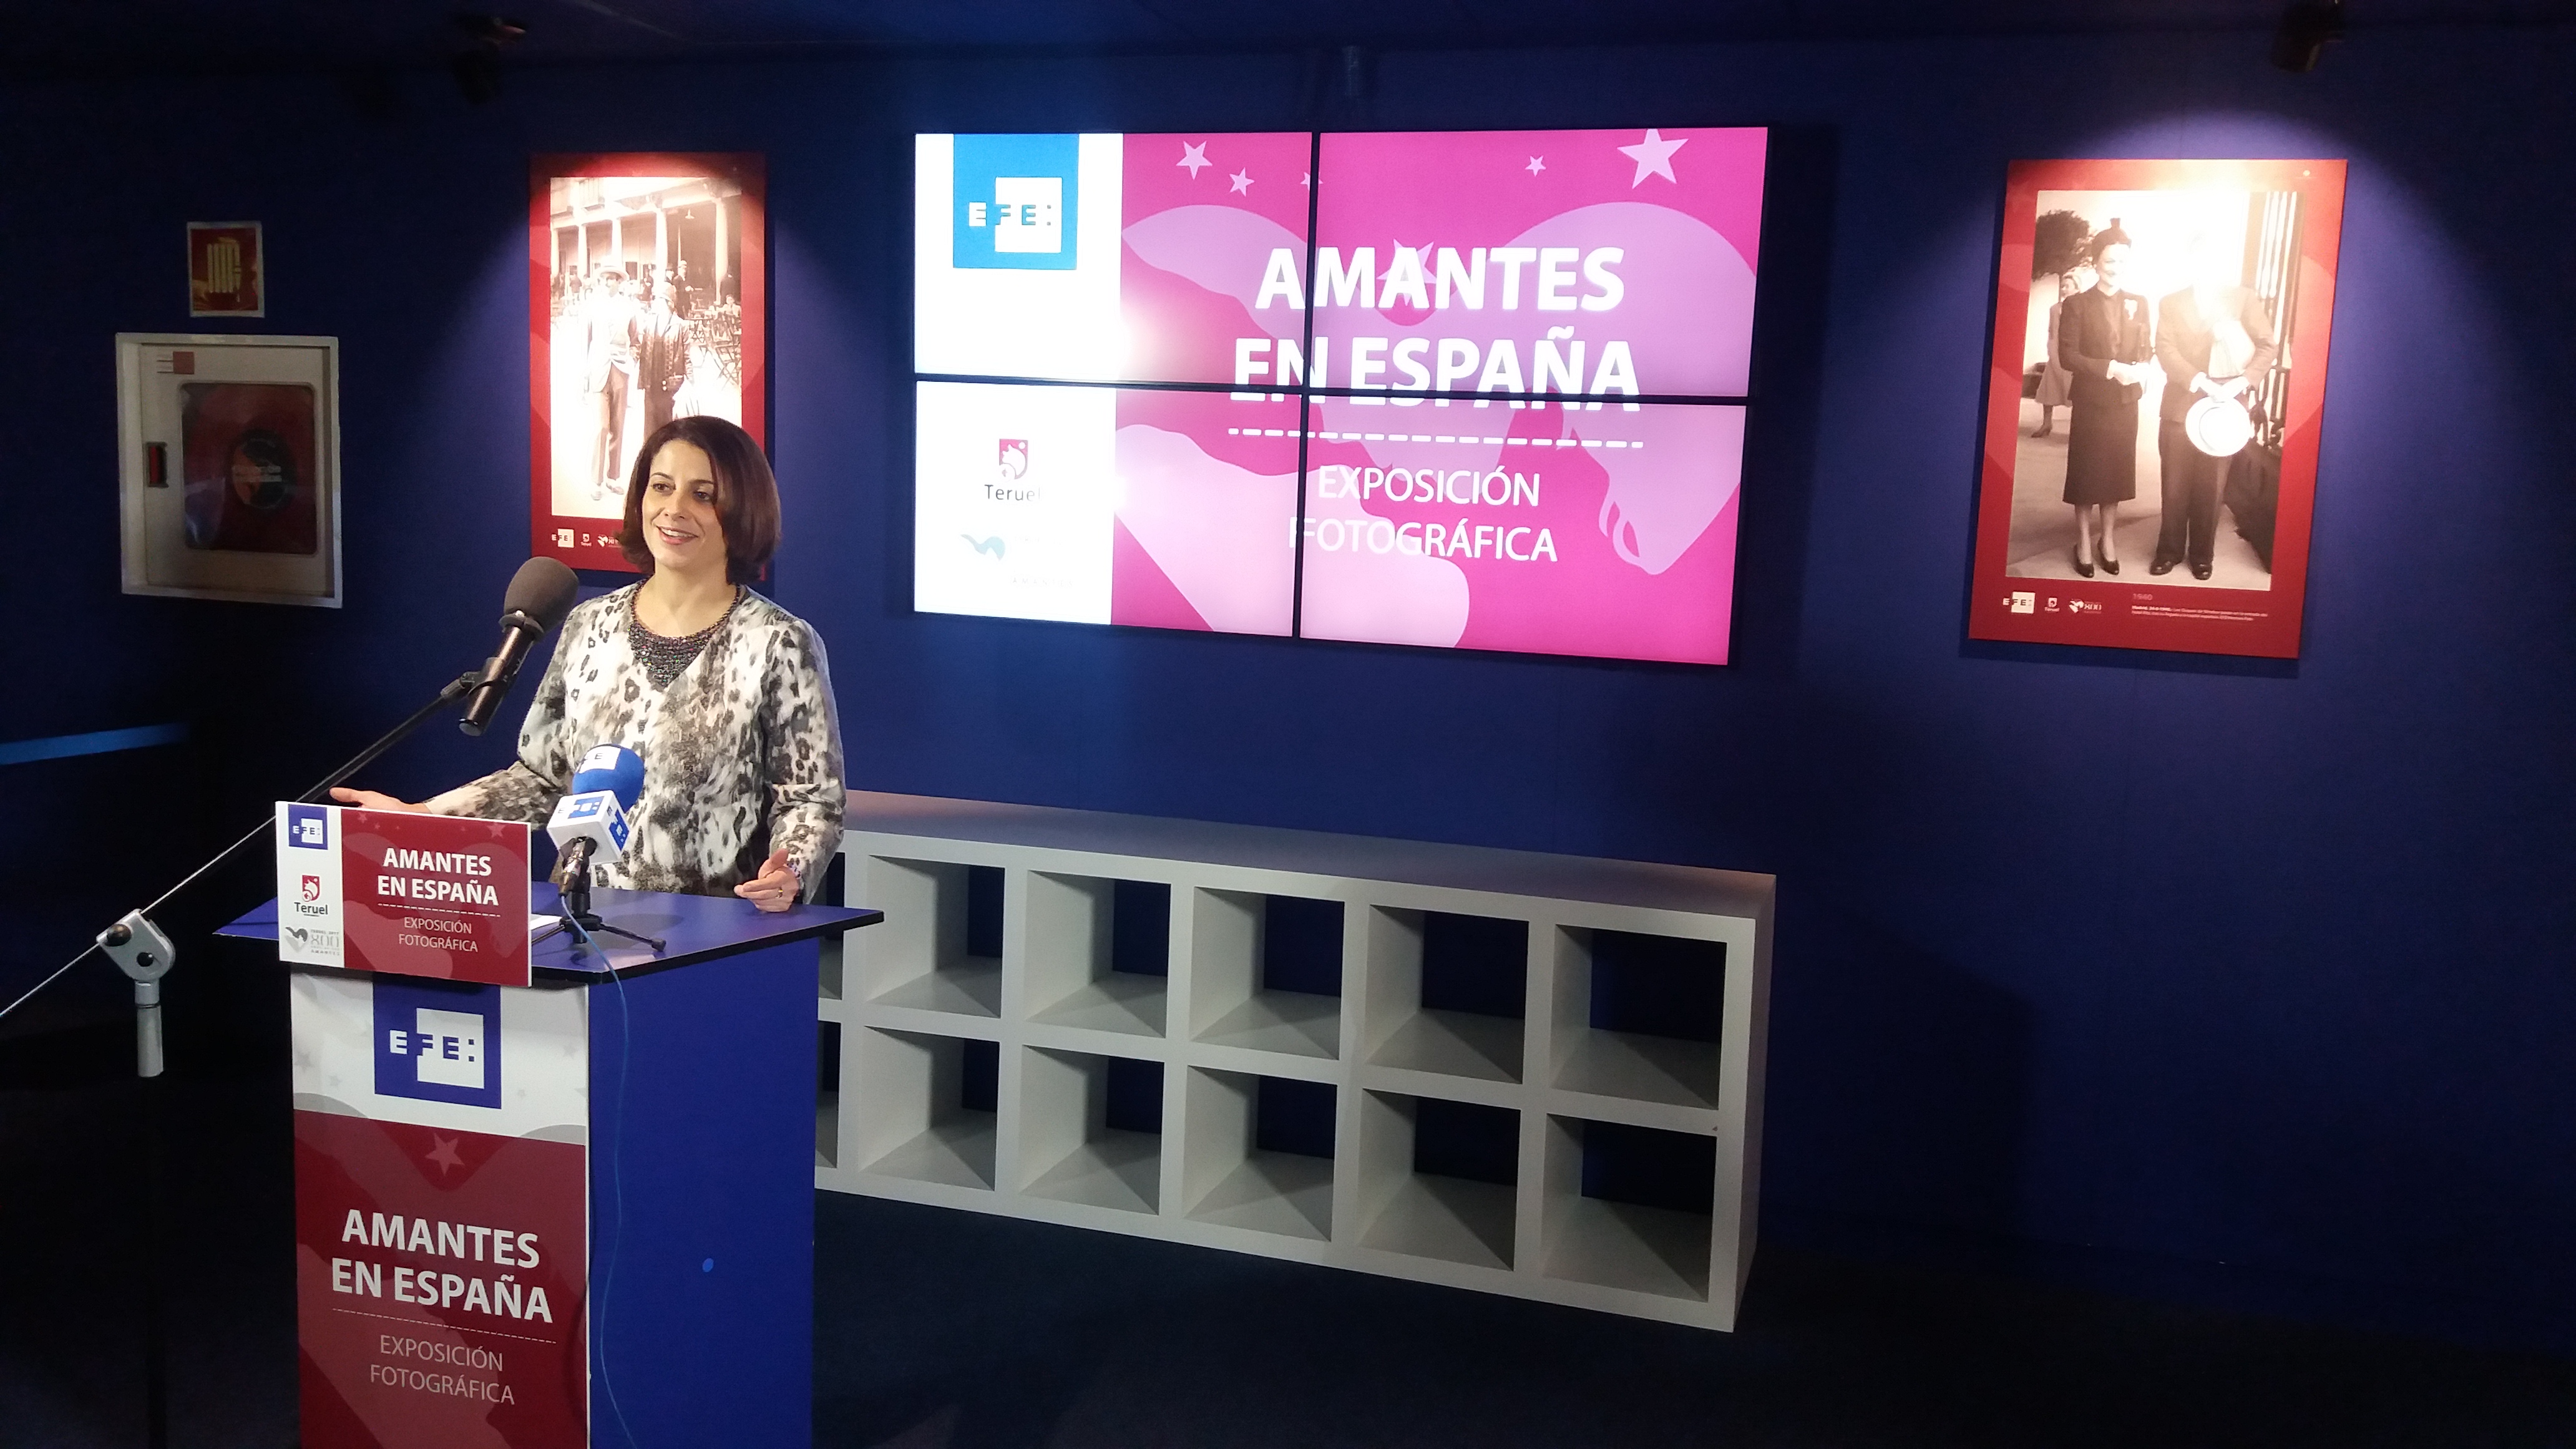 La alcaldesa de Teruel presenta en la Agencia EFE la exposición de fotografía “Amantes de España”